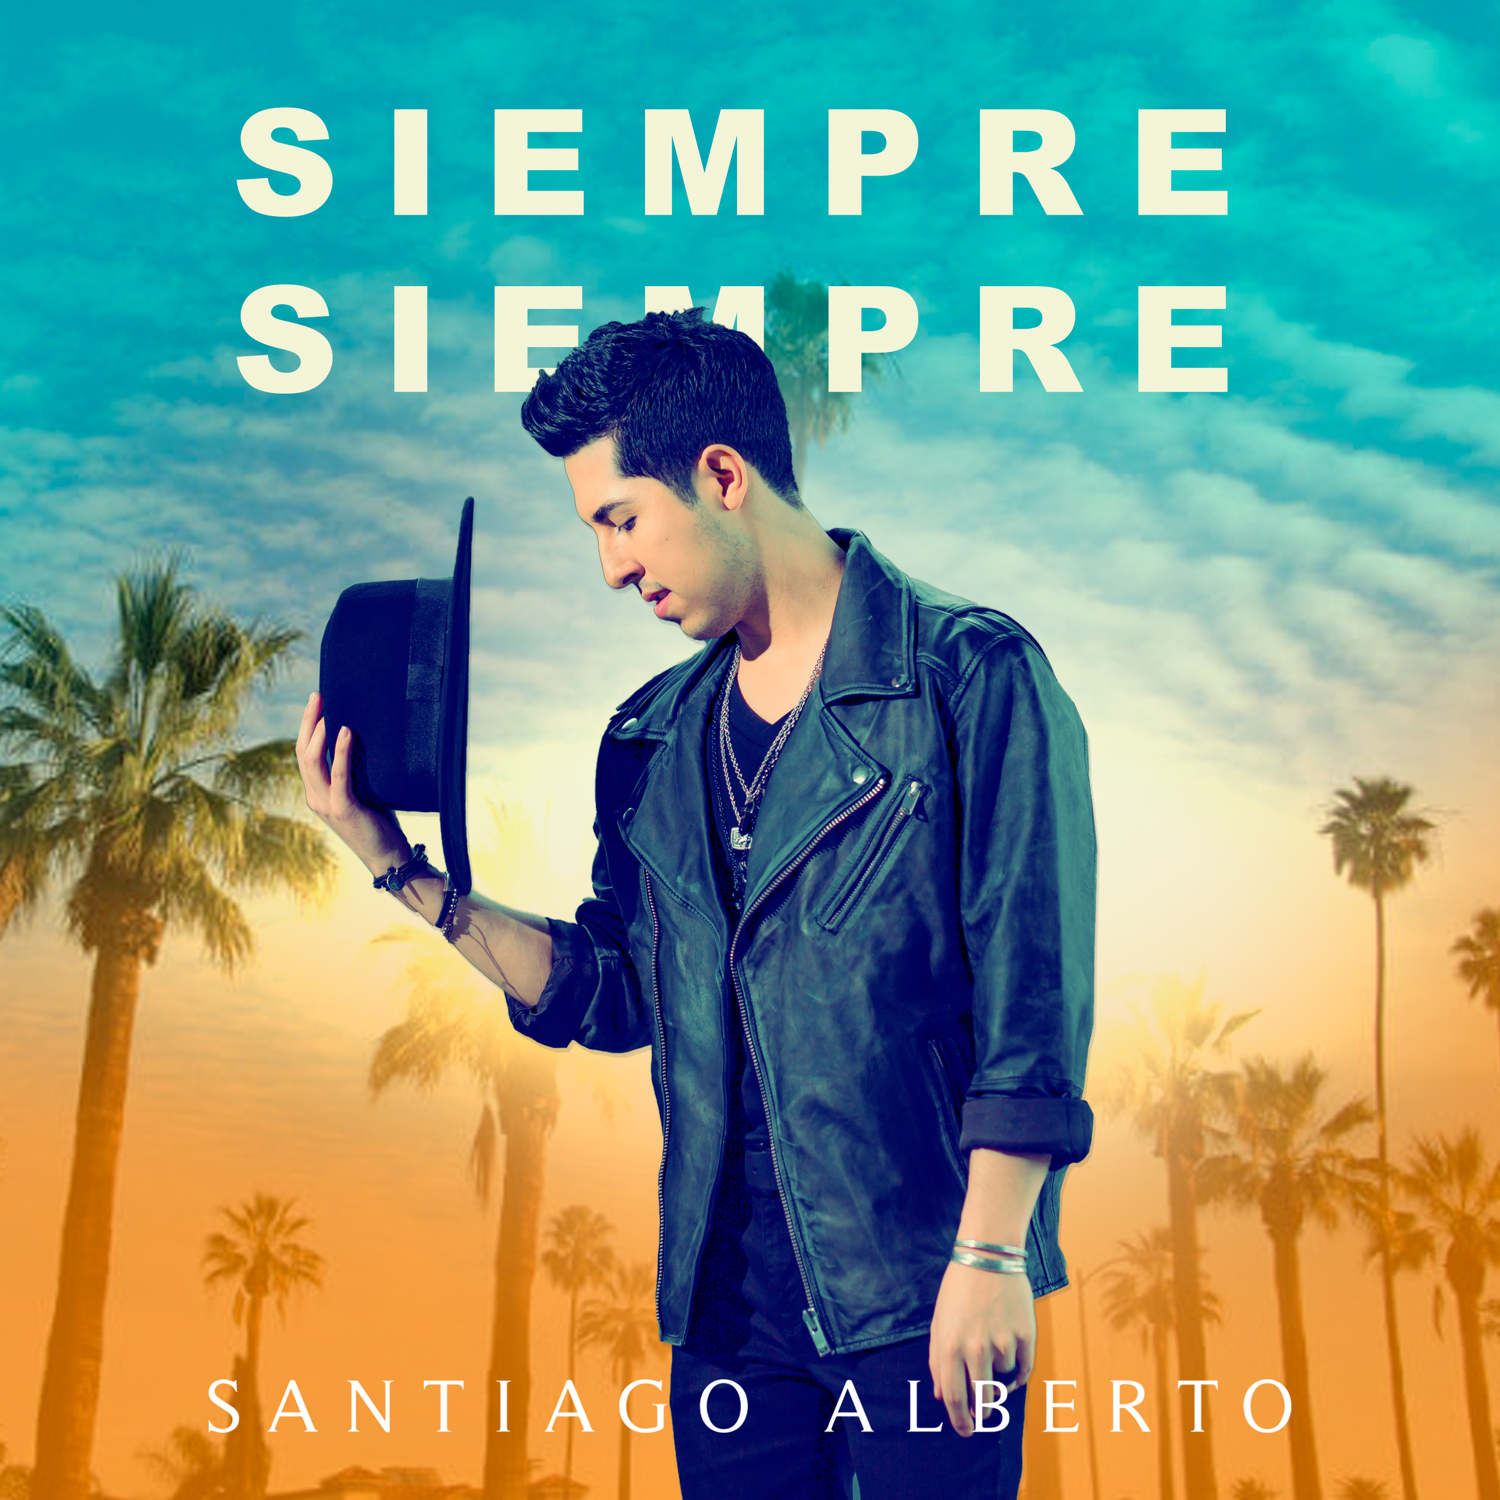 Santiago Alberto - Siempre Siempre